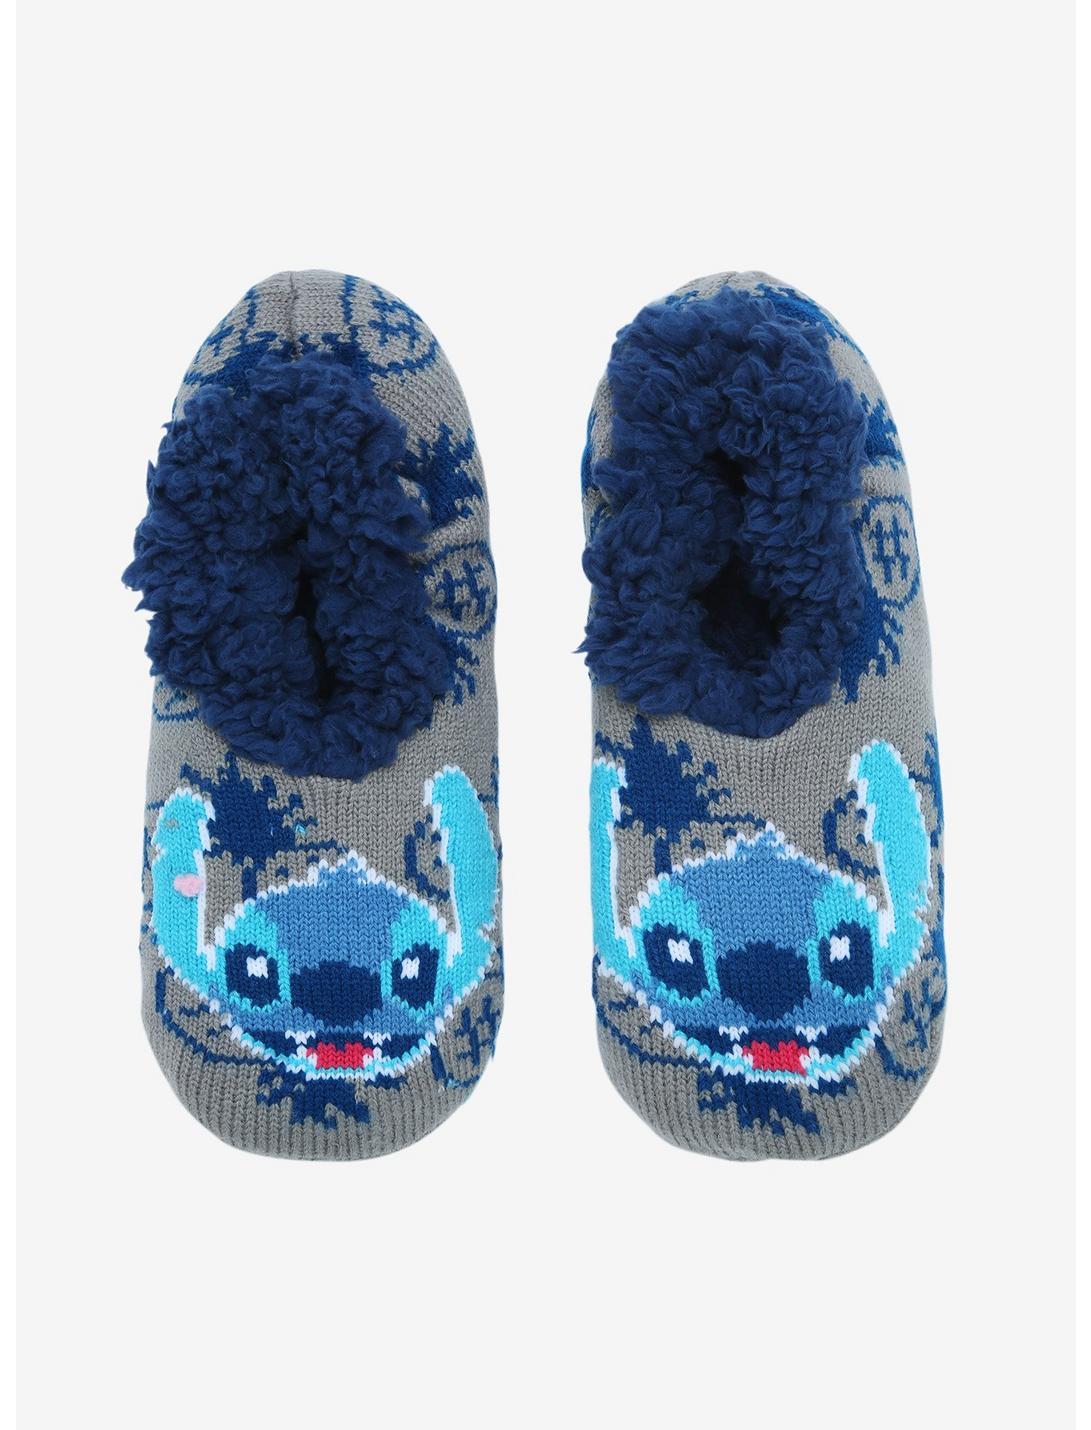 Disney Lilo & Stitch Aloha Cozy Slippers, , hi-res